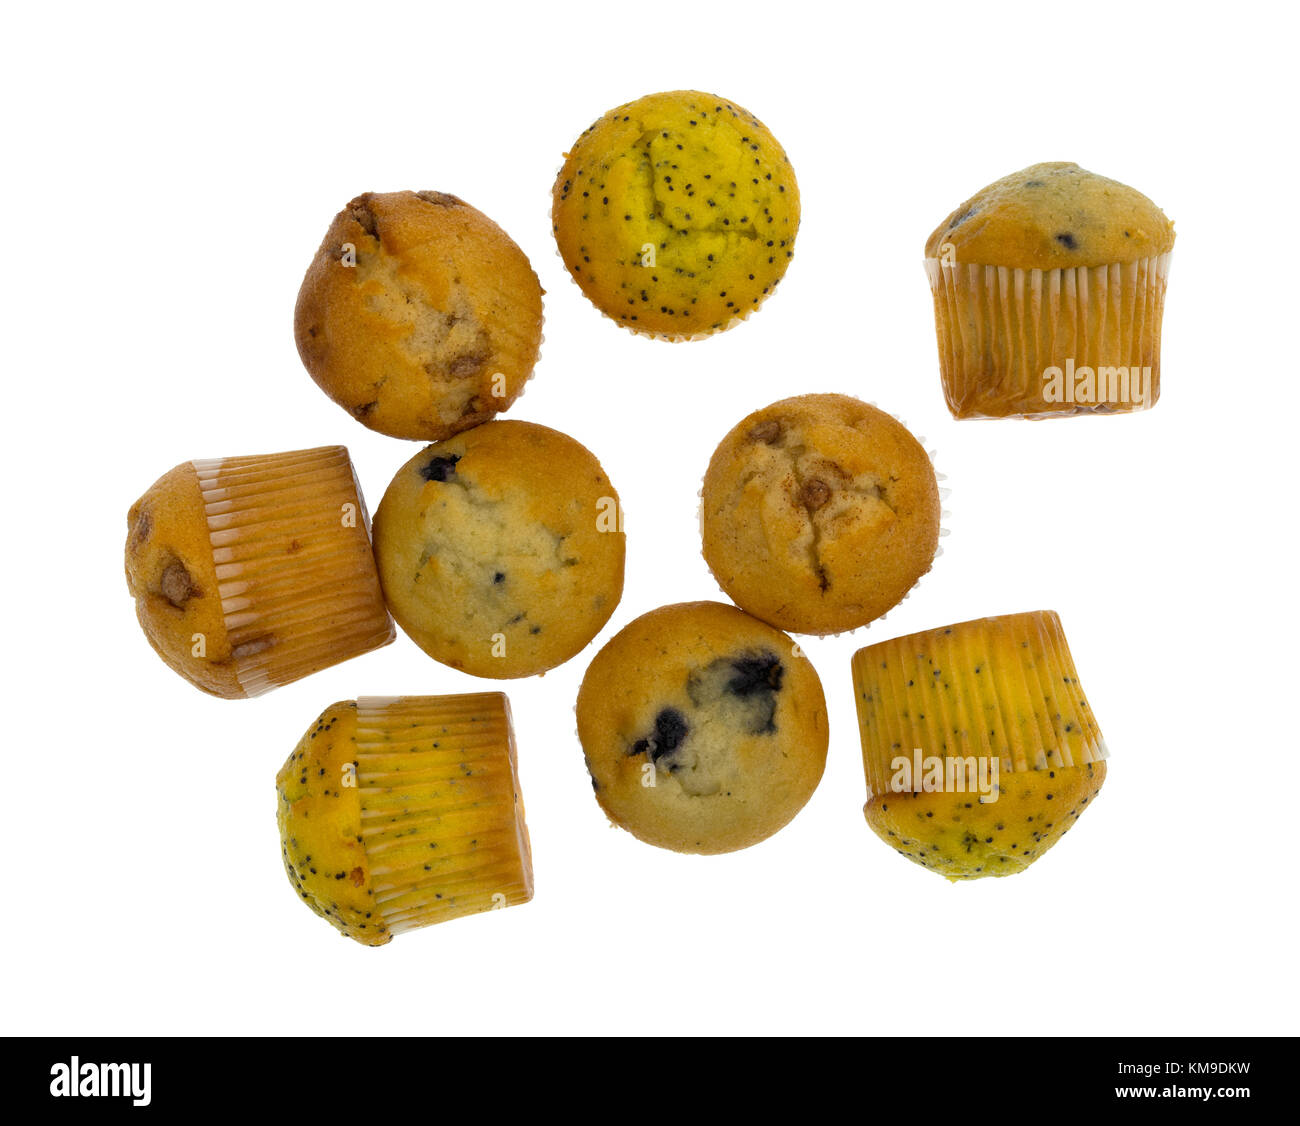 Vista dall'alto di un gruppo assortiti di formato del morso di limone semi di papavero, mirtillo e apple spice muffin isolato su uno sfondo bianco. Foto Stock